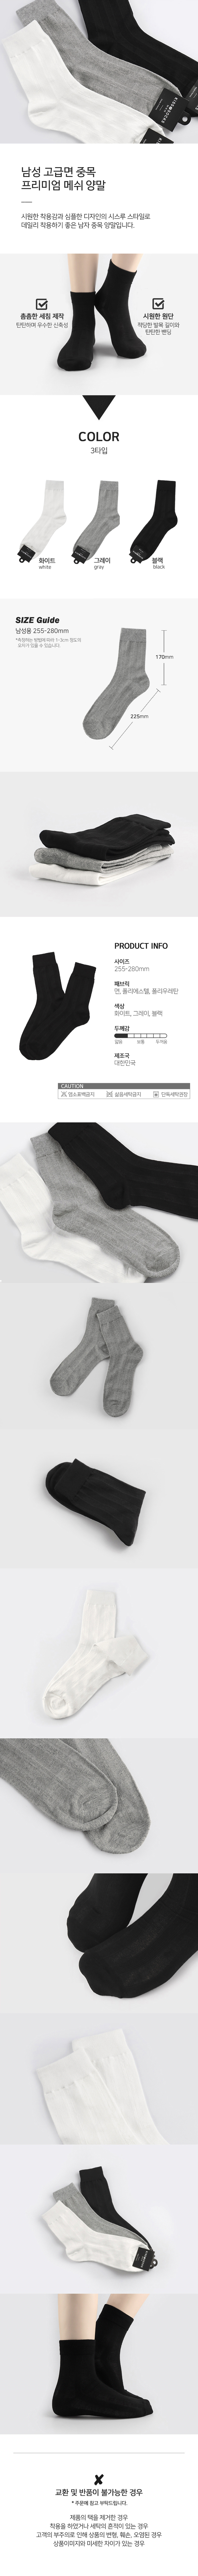 socks_00120.jpg